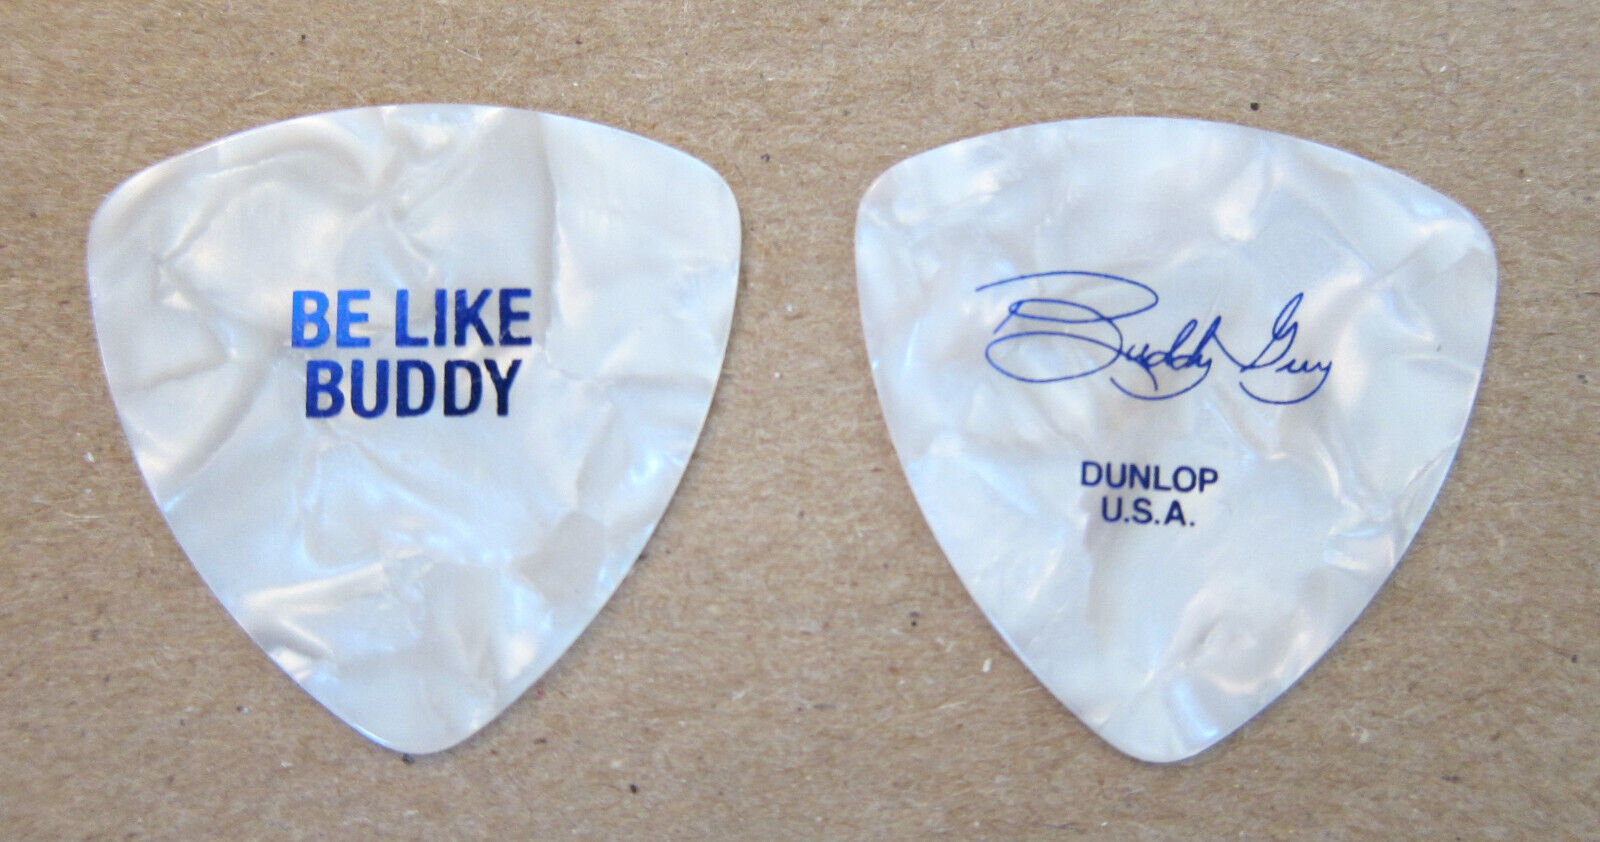 Buddy Guy - 2022 Tour Guitar Pick Be Like Buddy.